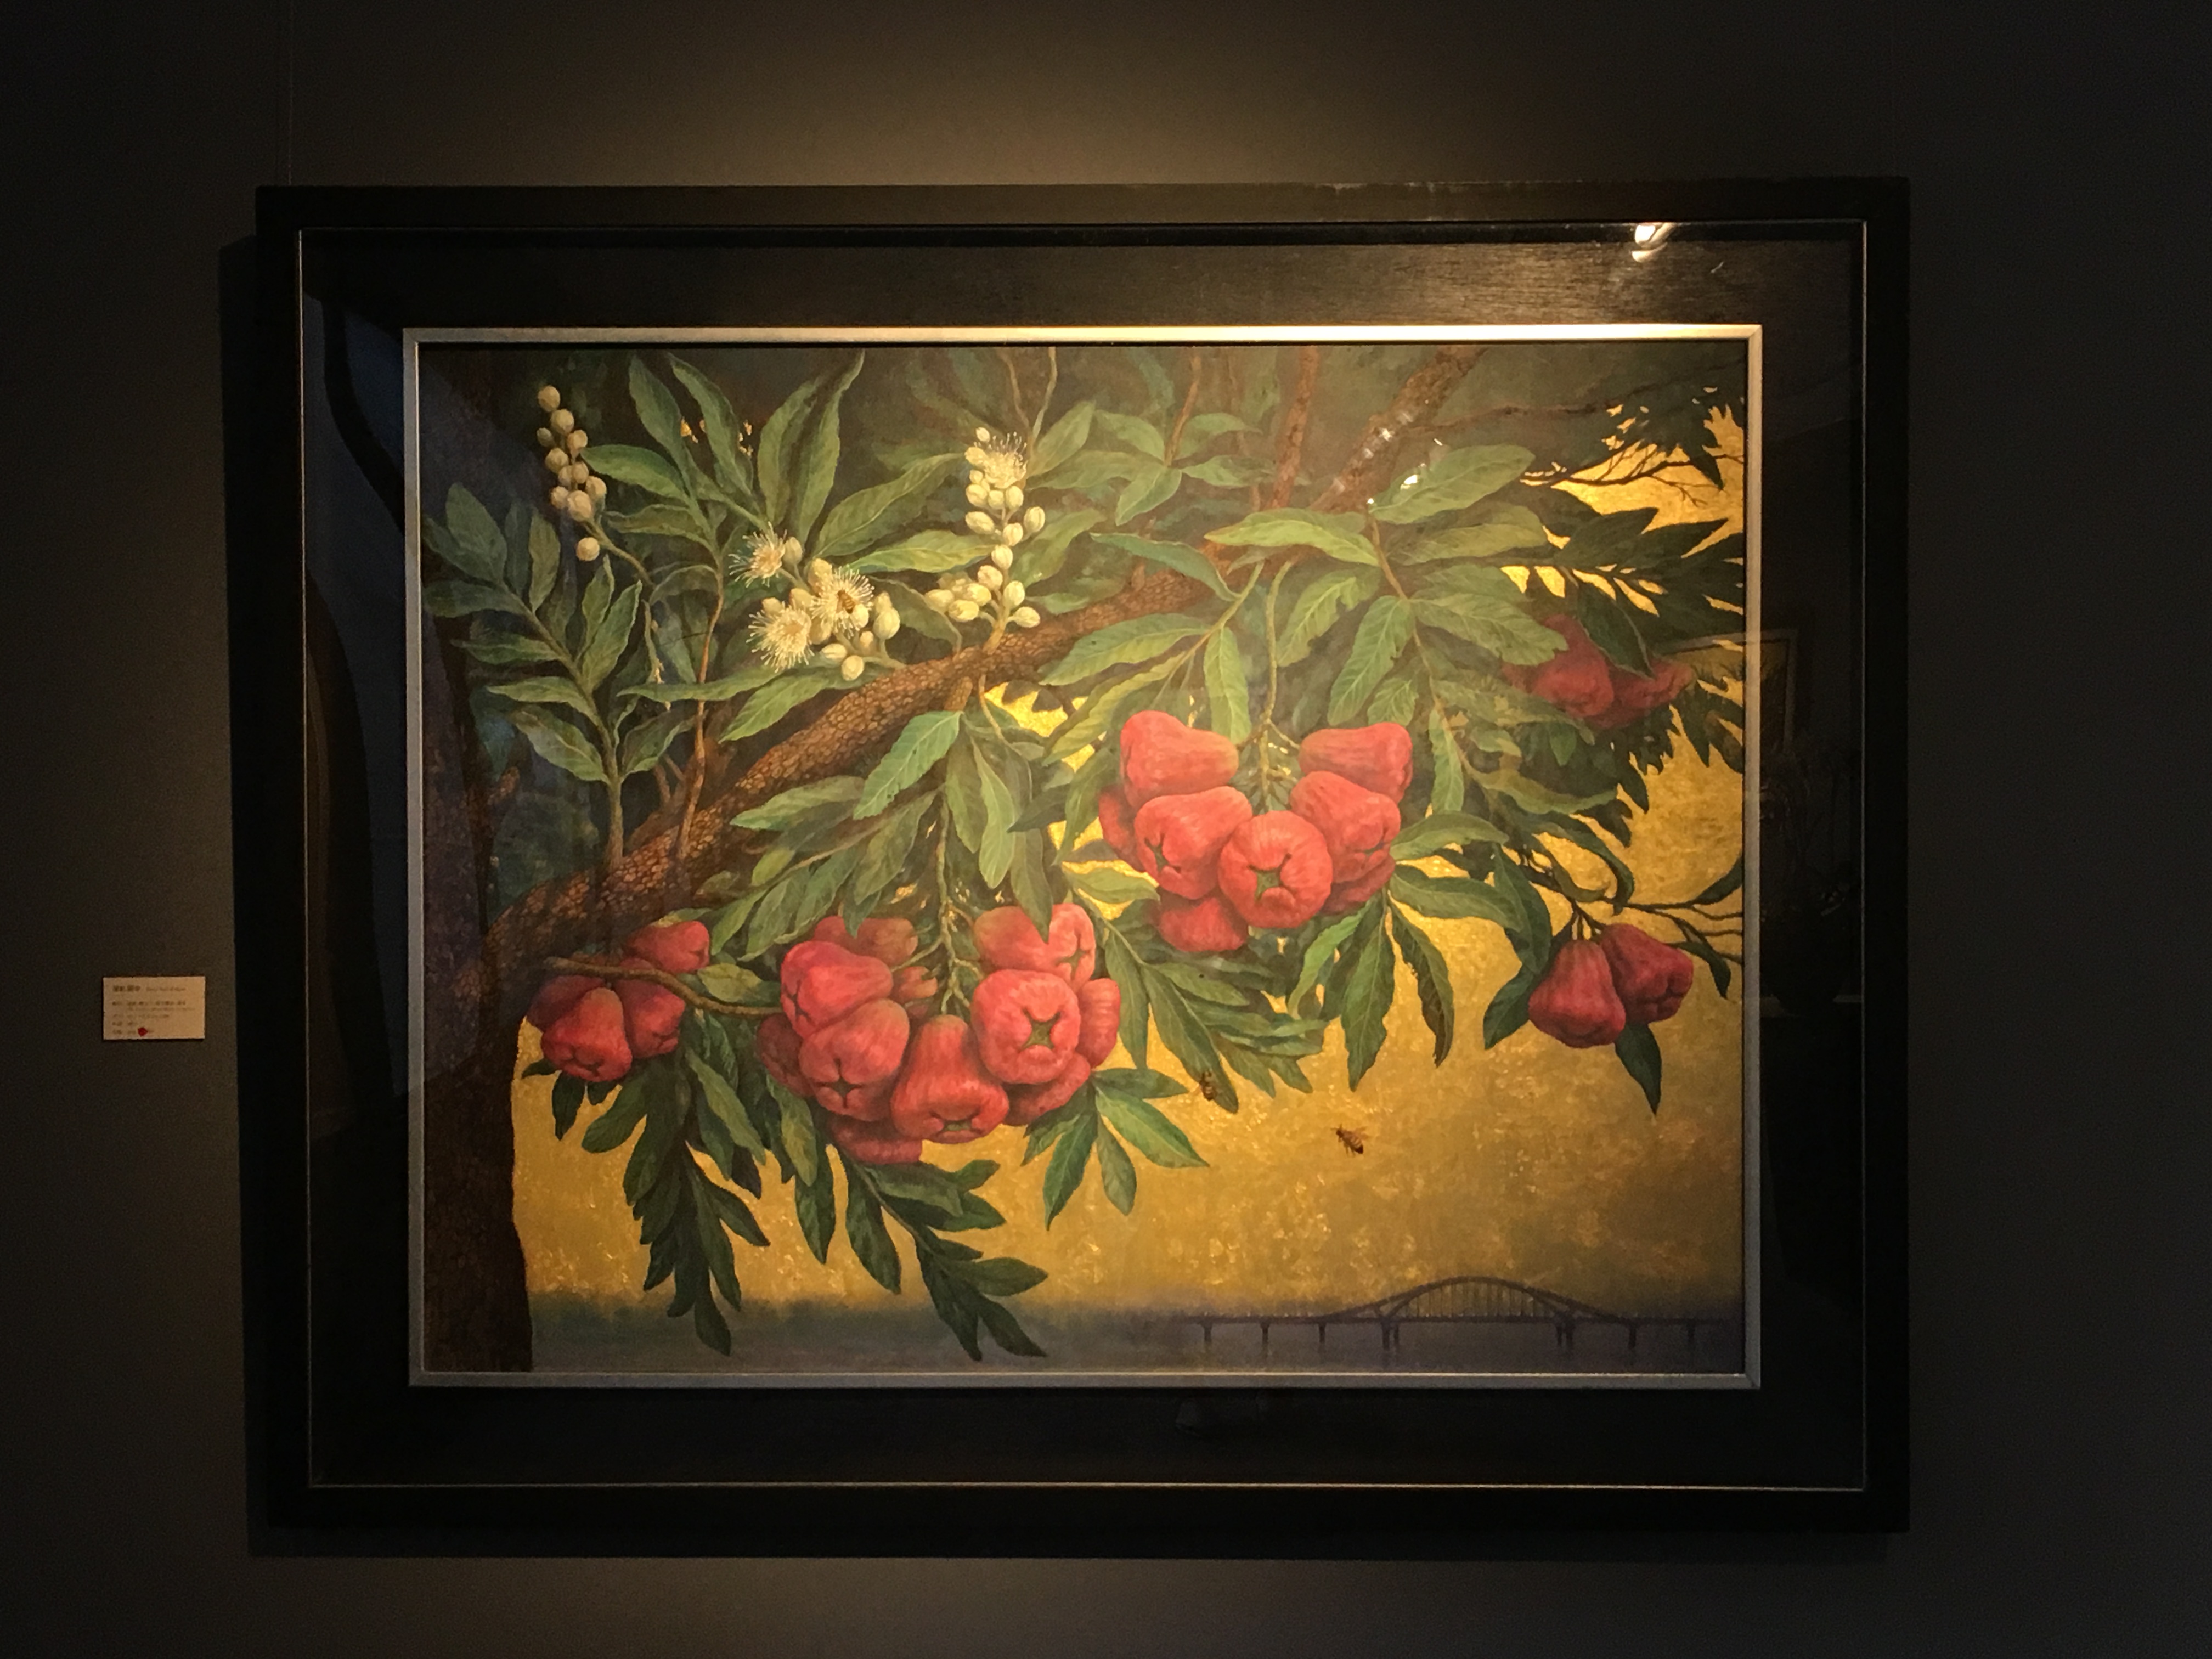 劉子平，《深紅與金》，91 x 116.5 cm，油彩、壓克力、綜合媒材、畫布，2019。